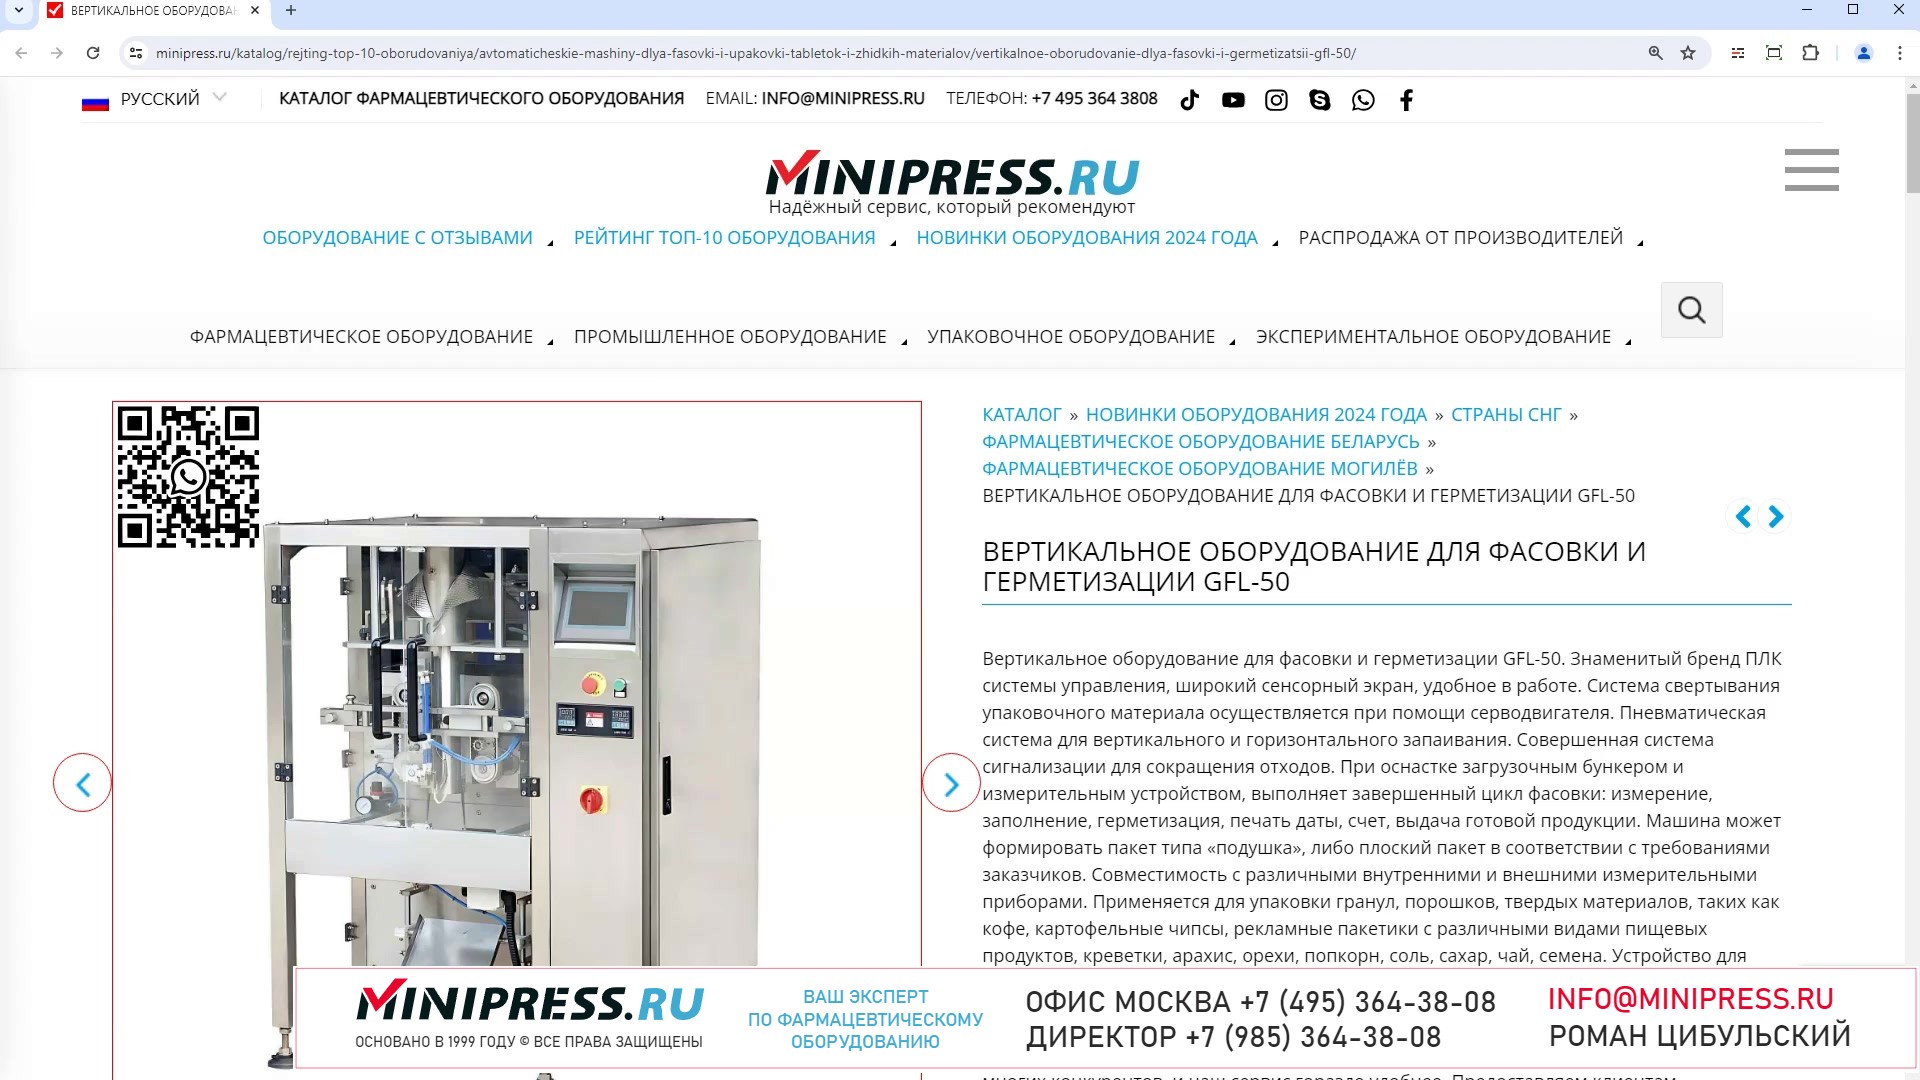 Minipress.ru Вертикальное оборудование для фасовки и герметизации GFL-50